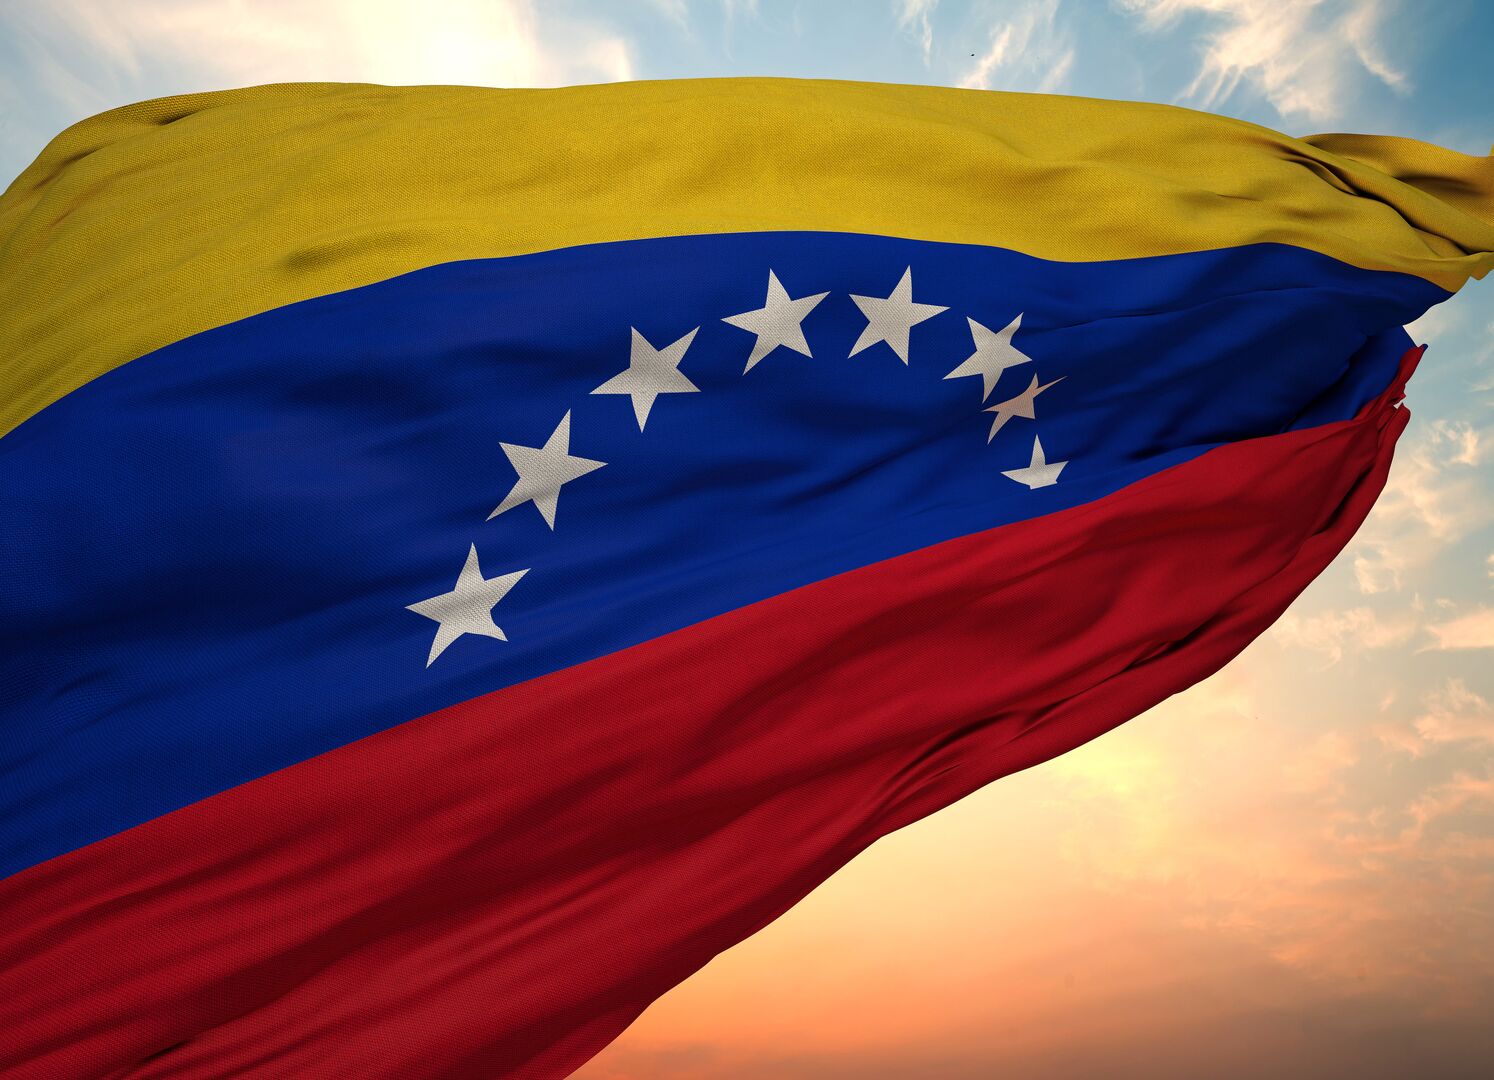 فنزويلا: نرفض الابتزاز والتدخل في شؤوننا الداخلية من قبل واشنطن